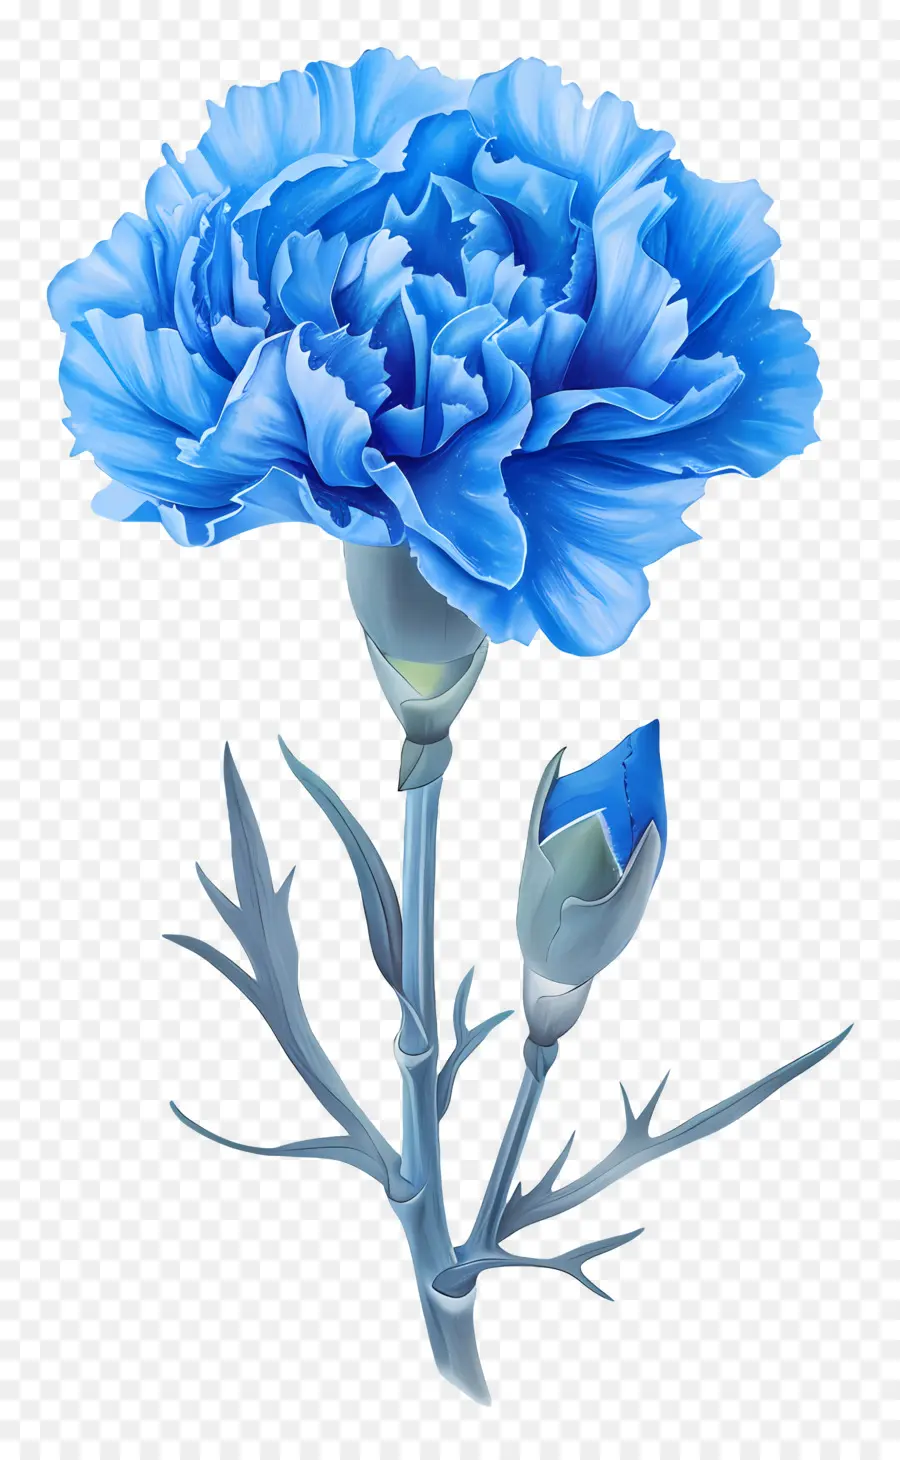 hoa cẩm chướng màu xanh lam cẩm chướng hoa nở hoa cánh hoa - Hoa cẩm chướng màu xanh nở rộ với nhụy hoa